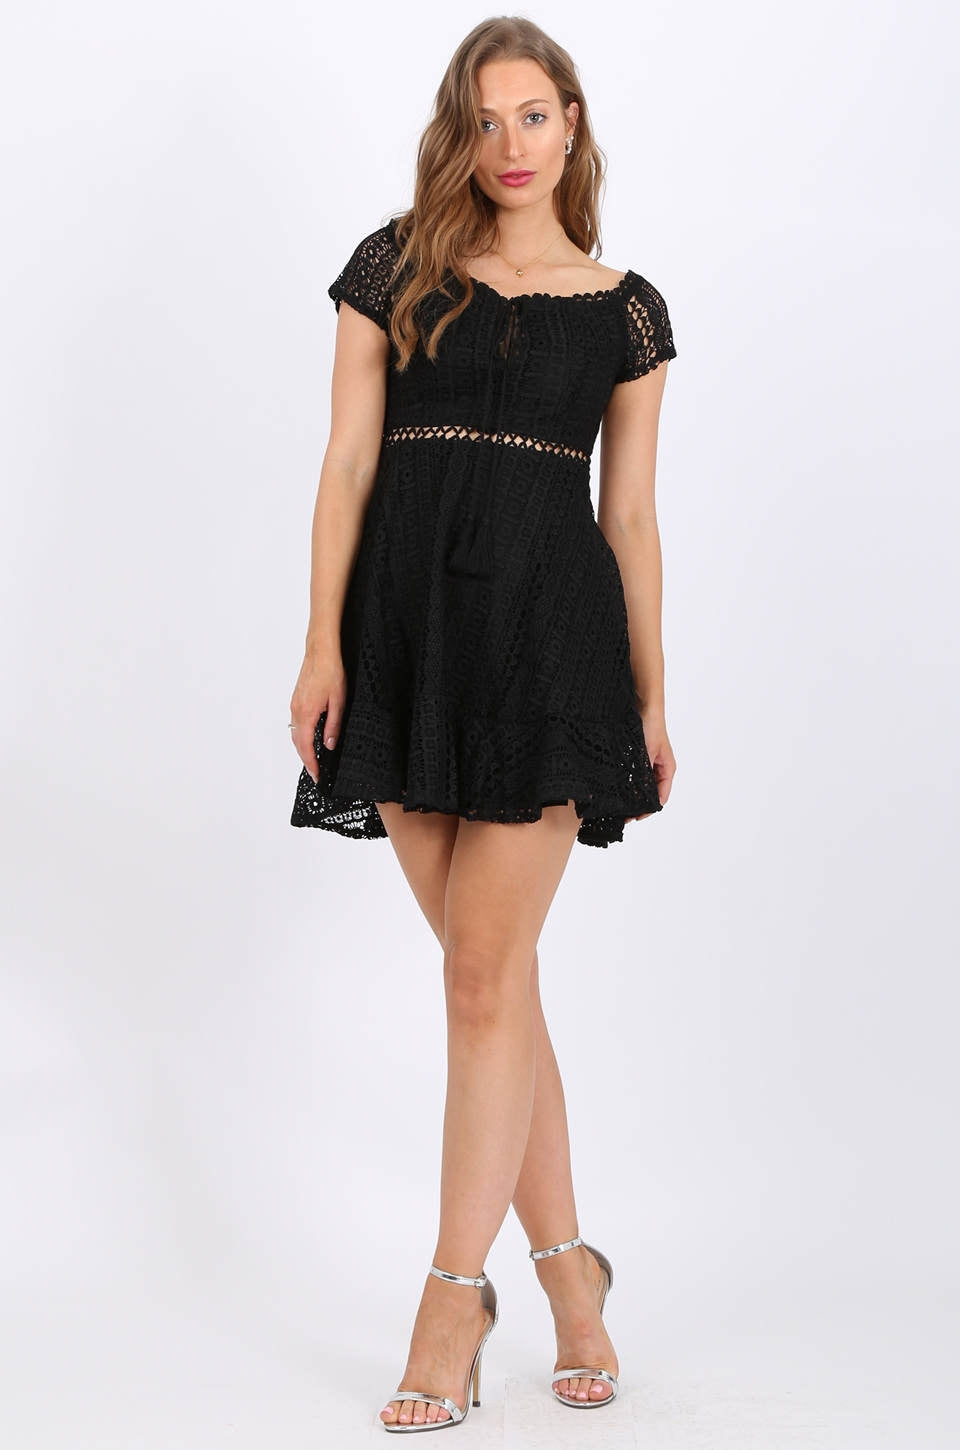 MISS PINKI Naomi Lace Dress in black